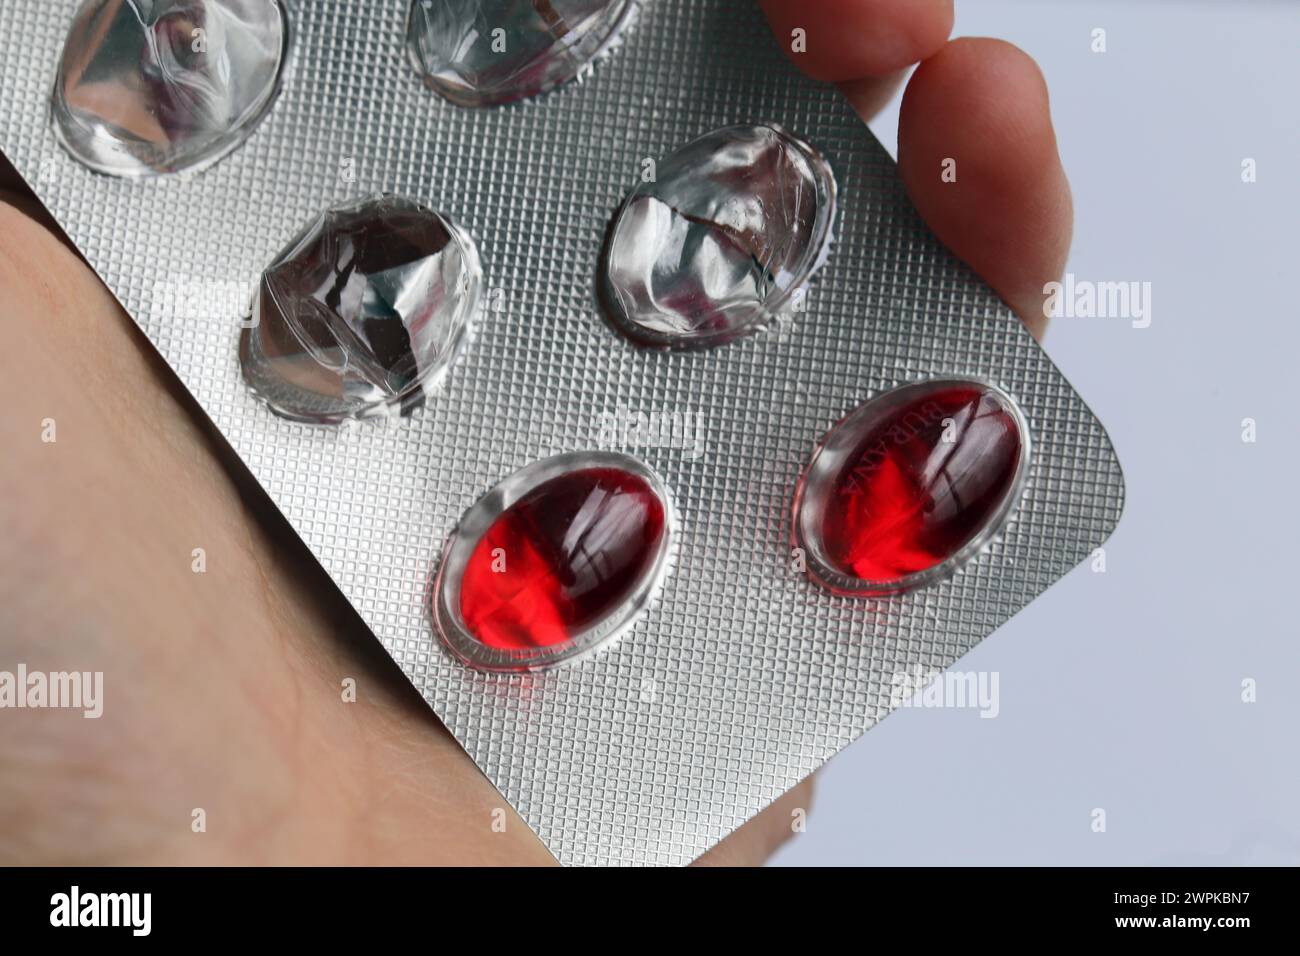 Espoo, Finlandia - aprile 2020: Burana, Ibuprofen 400mg capsule , questo è un farmaco antinfiammatorio non steroideo (NSAID) che allevia il dolore e la febbre. Foto Stock